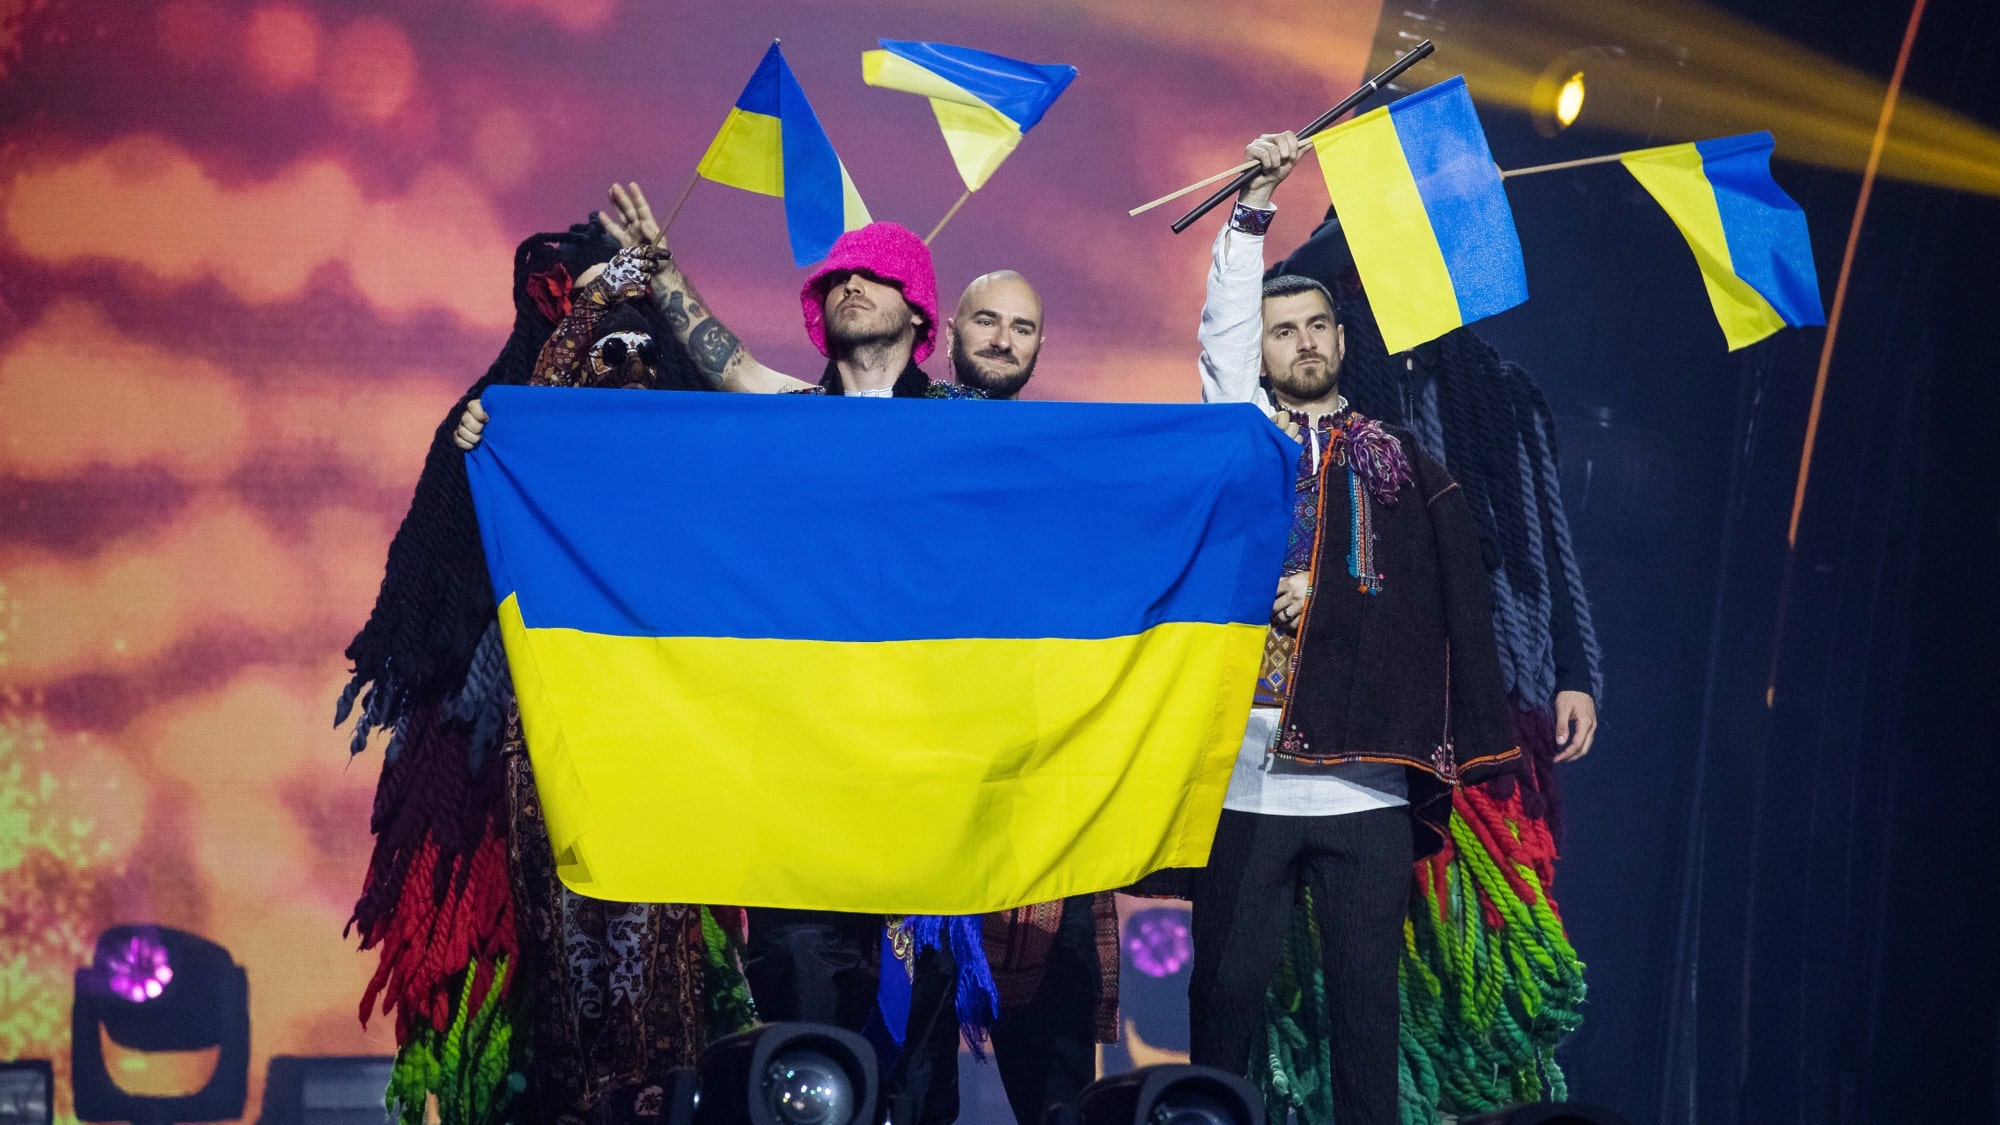 ユーロビジョン22 ウクライナが優勝 視聴者の圧倒的支持集める Voice 洋楽